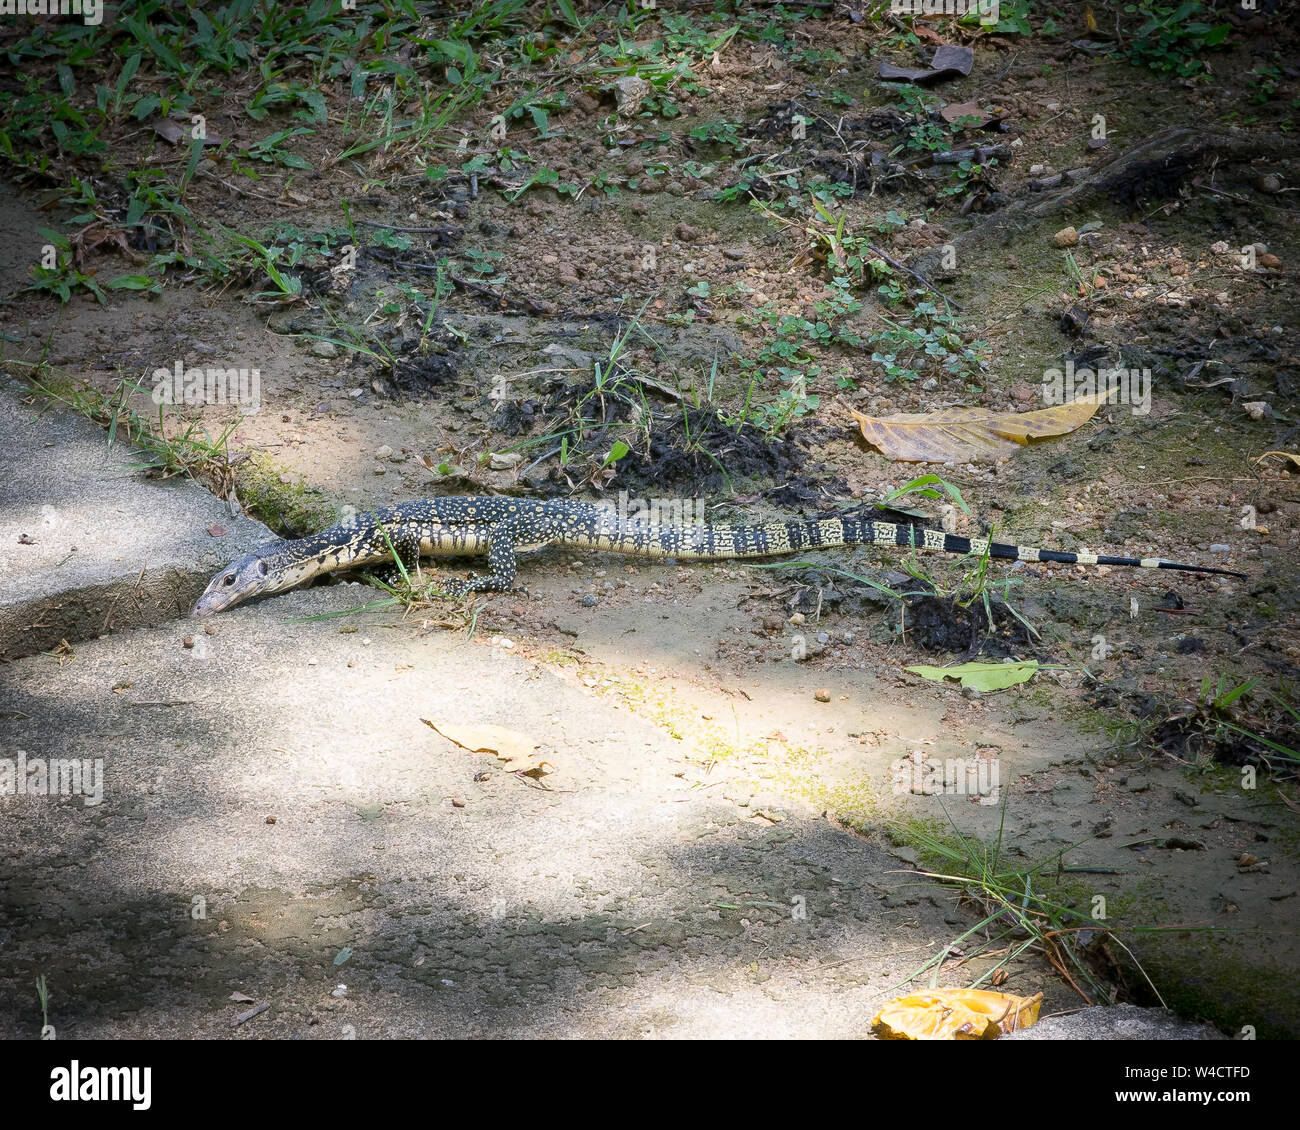 Reptiles lagartija en el suelo en el parque. Foto de stock